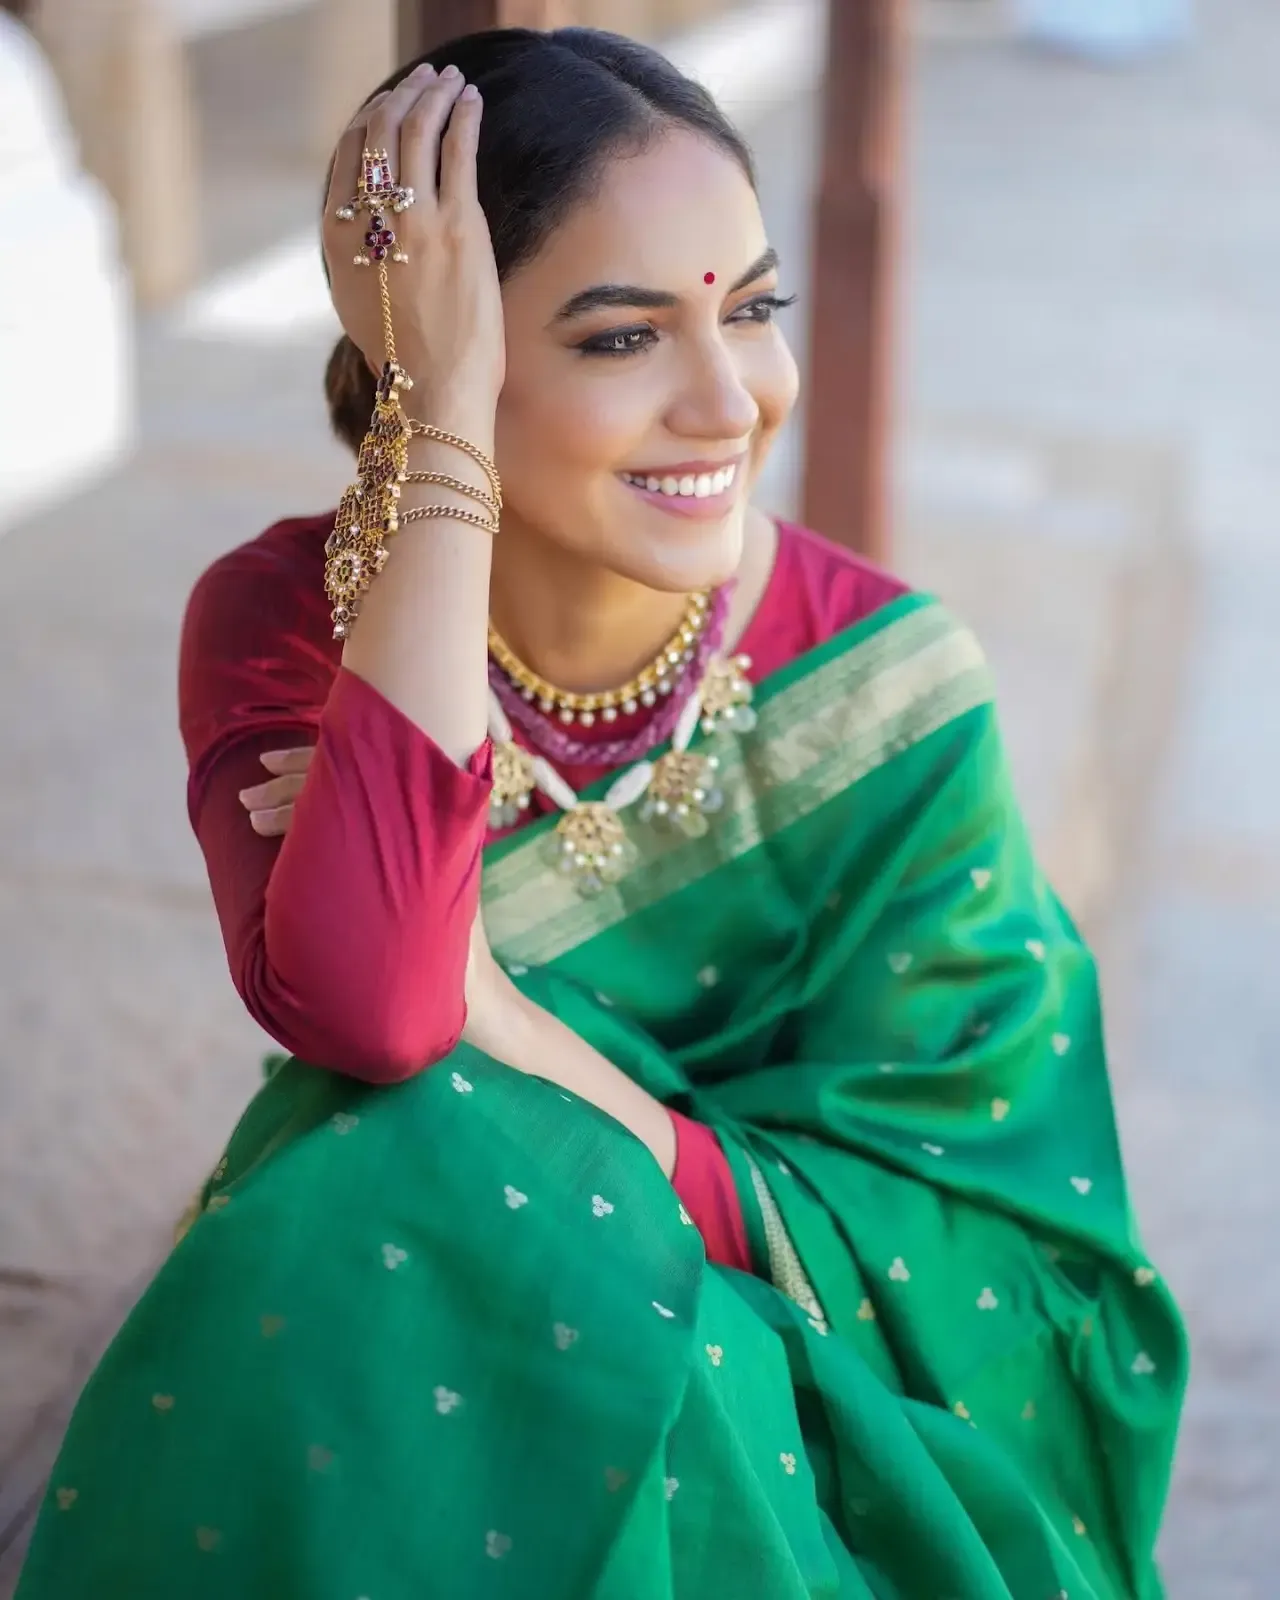 South Indian Actress Ritu Varma in Traditional Green Saree